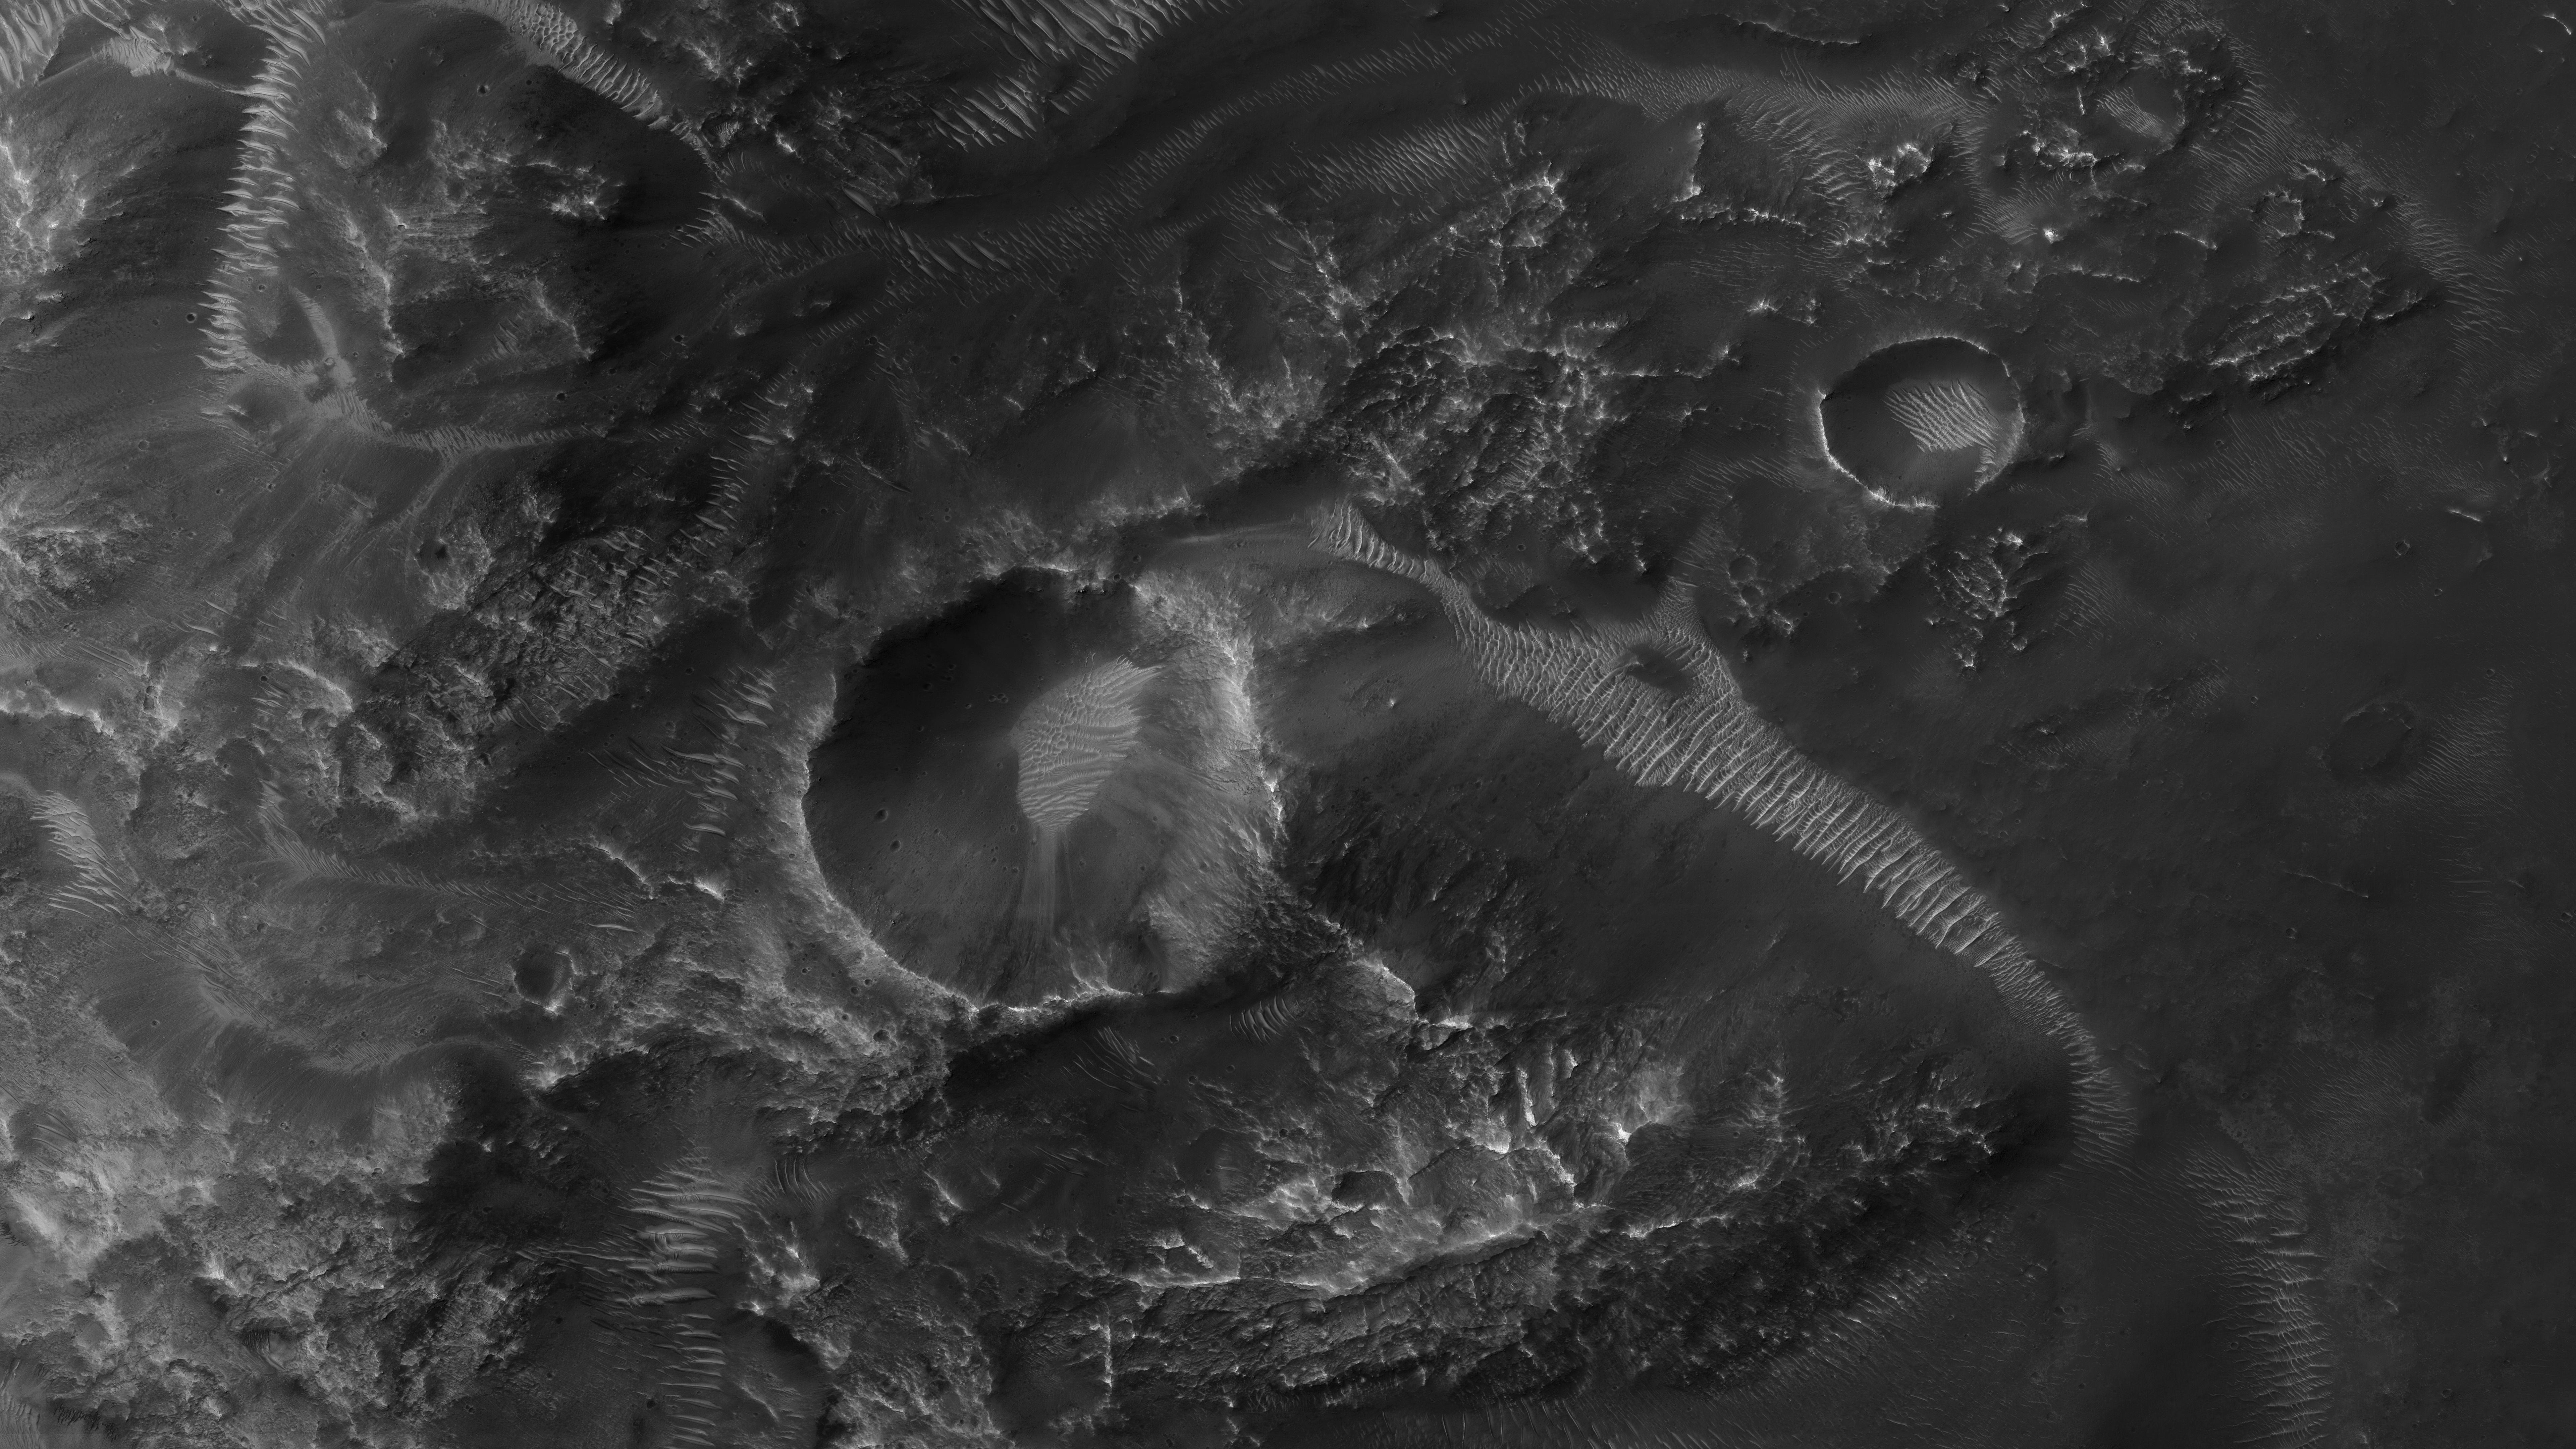 Pianeta Marte. 5 NUOVE Immagini che STUPISCONO TUTTA L'UMANITÀ foto piccoli crateri